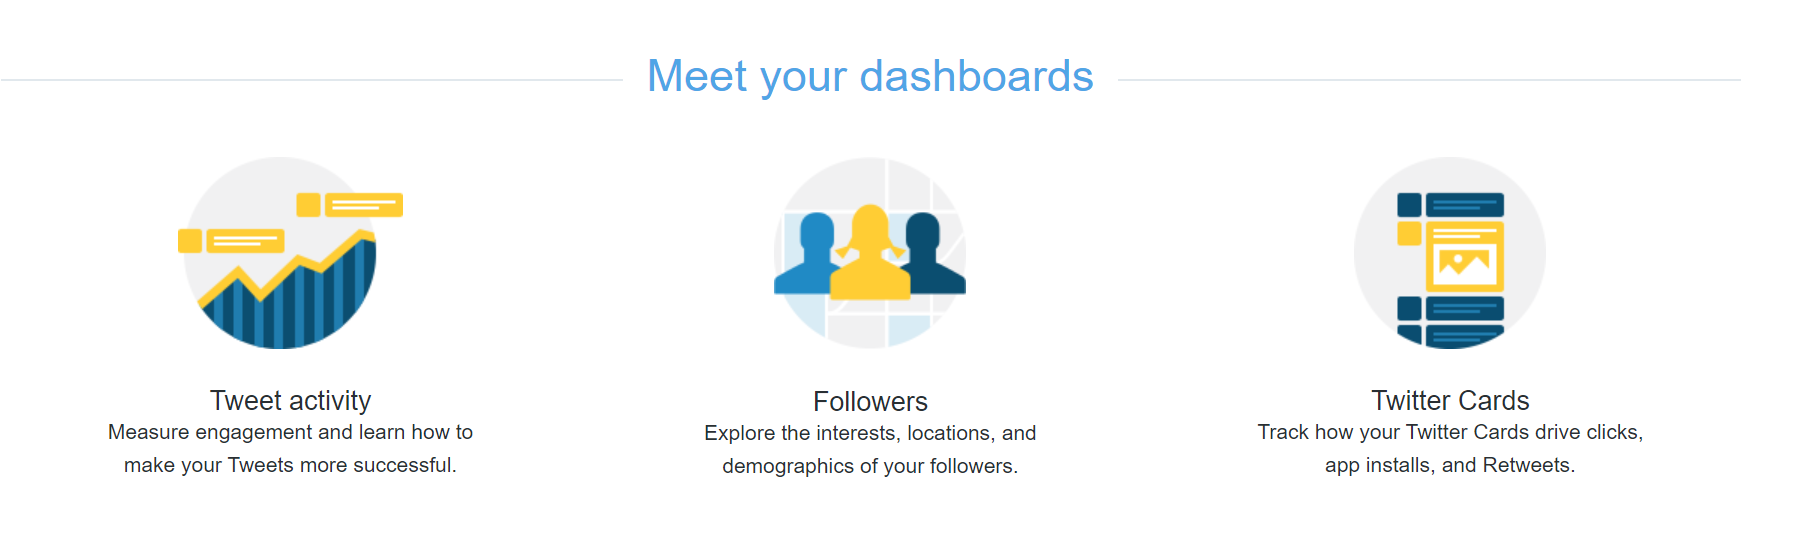 Audiense blog - Twitter dashboards